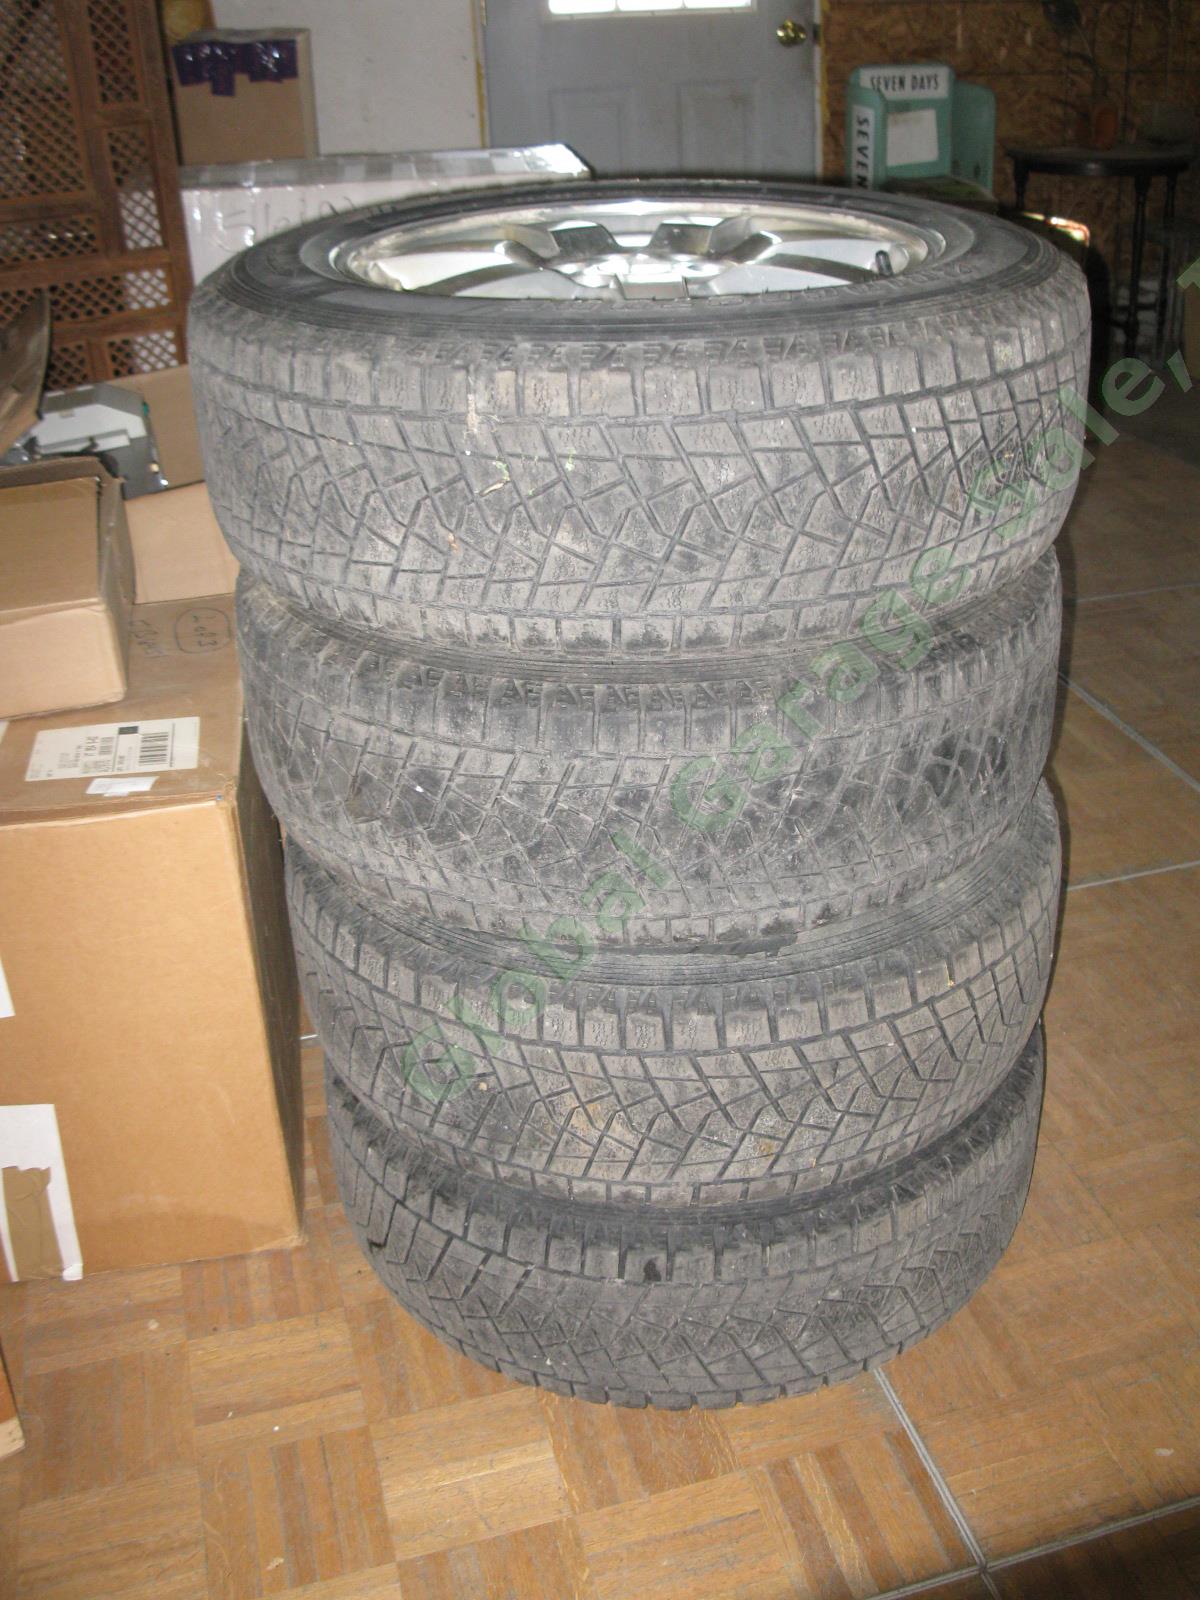 4 17"x 7.5" Rims Wheels + Bridgestone Blizzak 235/65/R17 Snow Tires Cadillac SRX 3